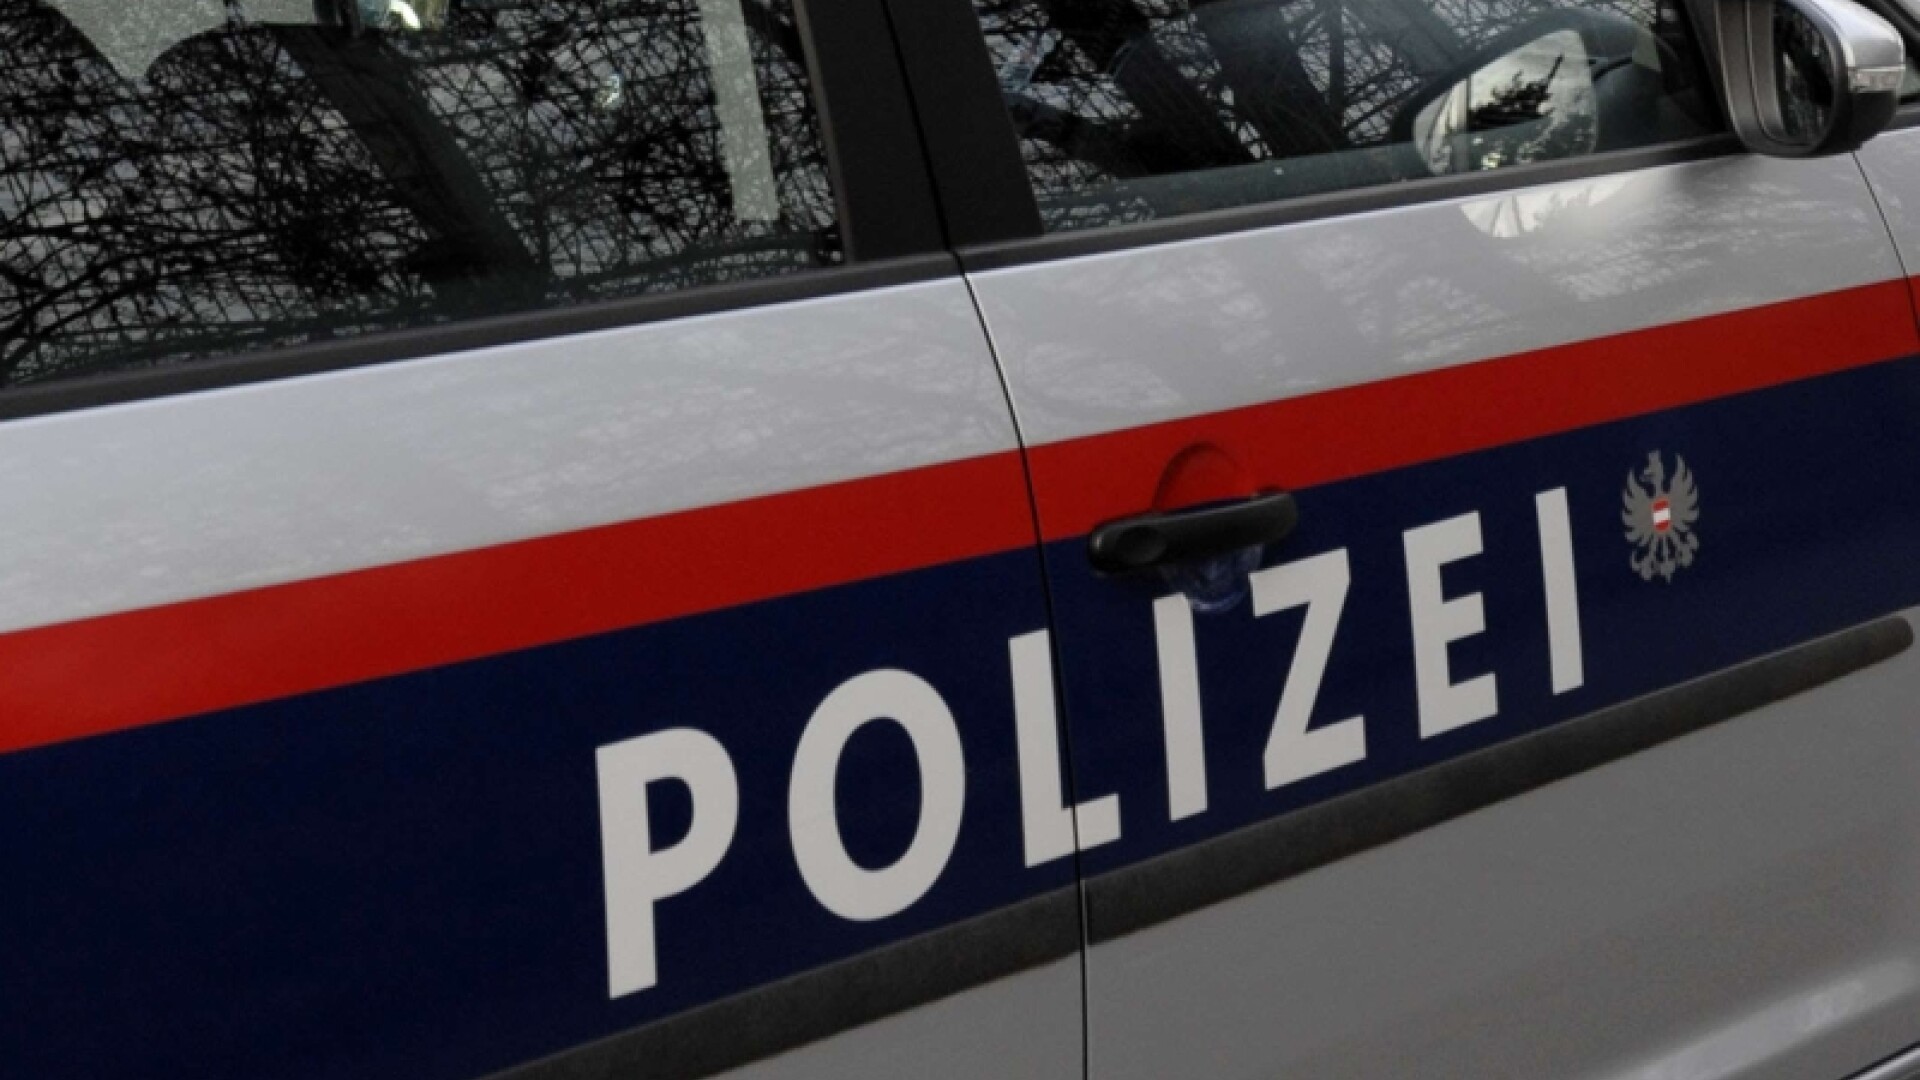 Politie Austria